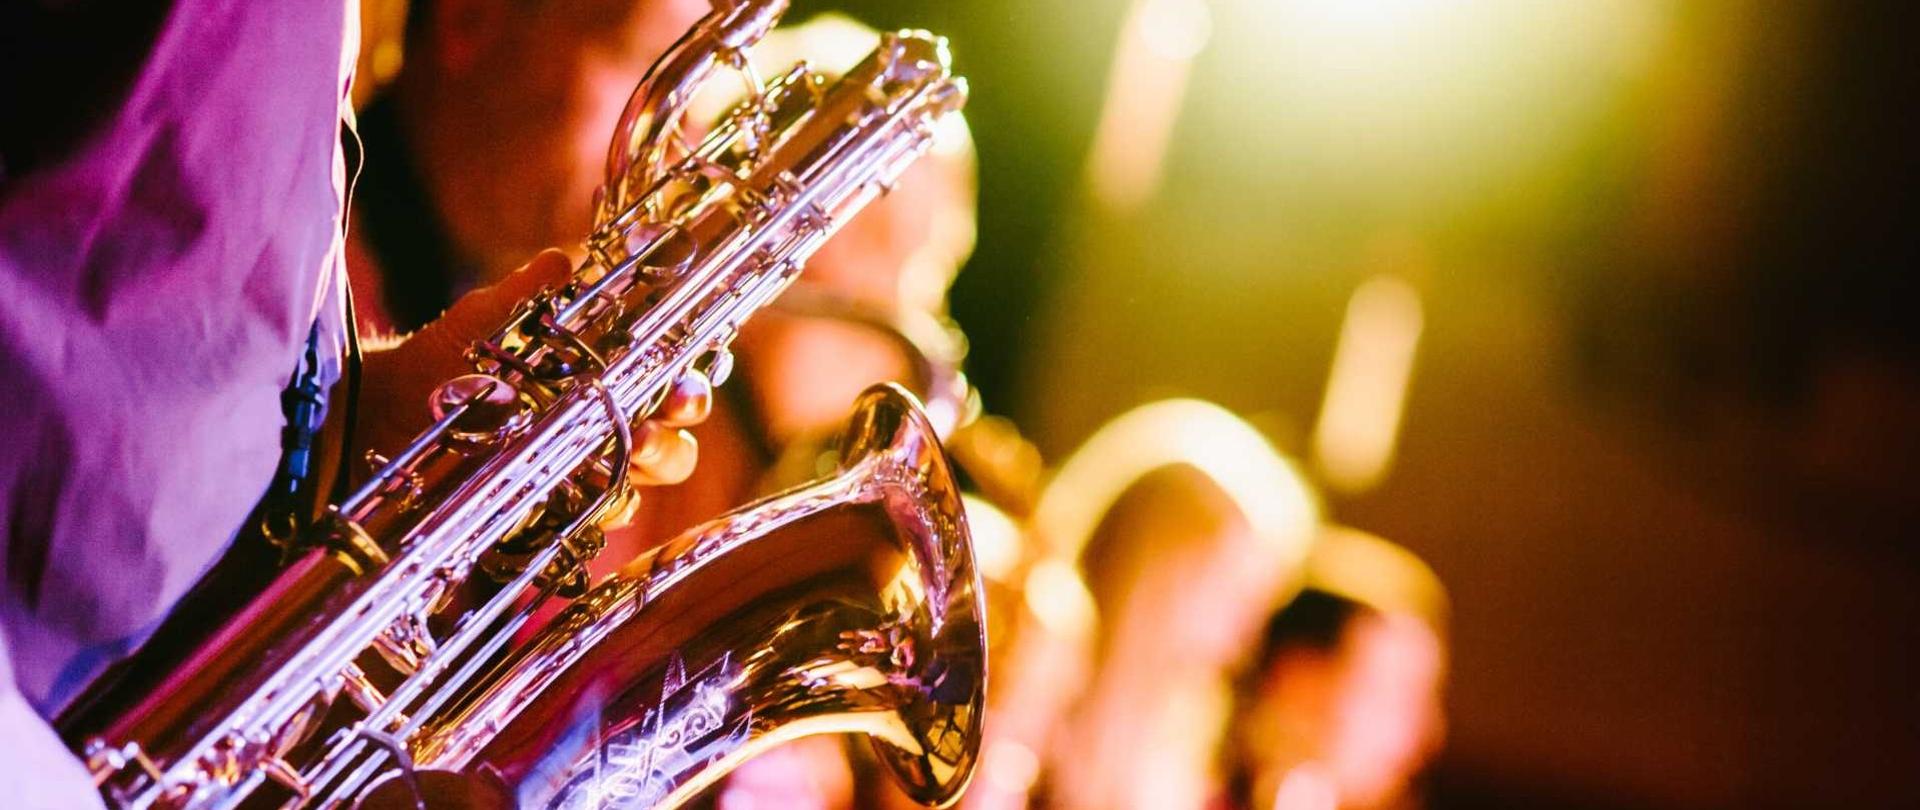 fotografia przedstawia saksofon trzymany w rękach muzyka